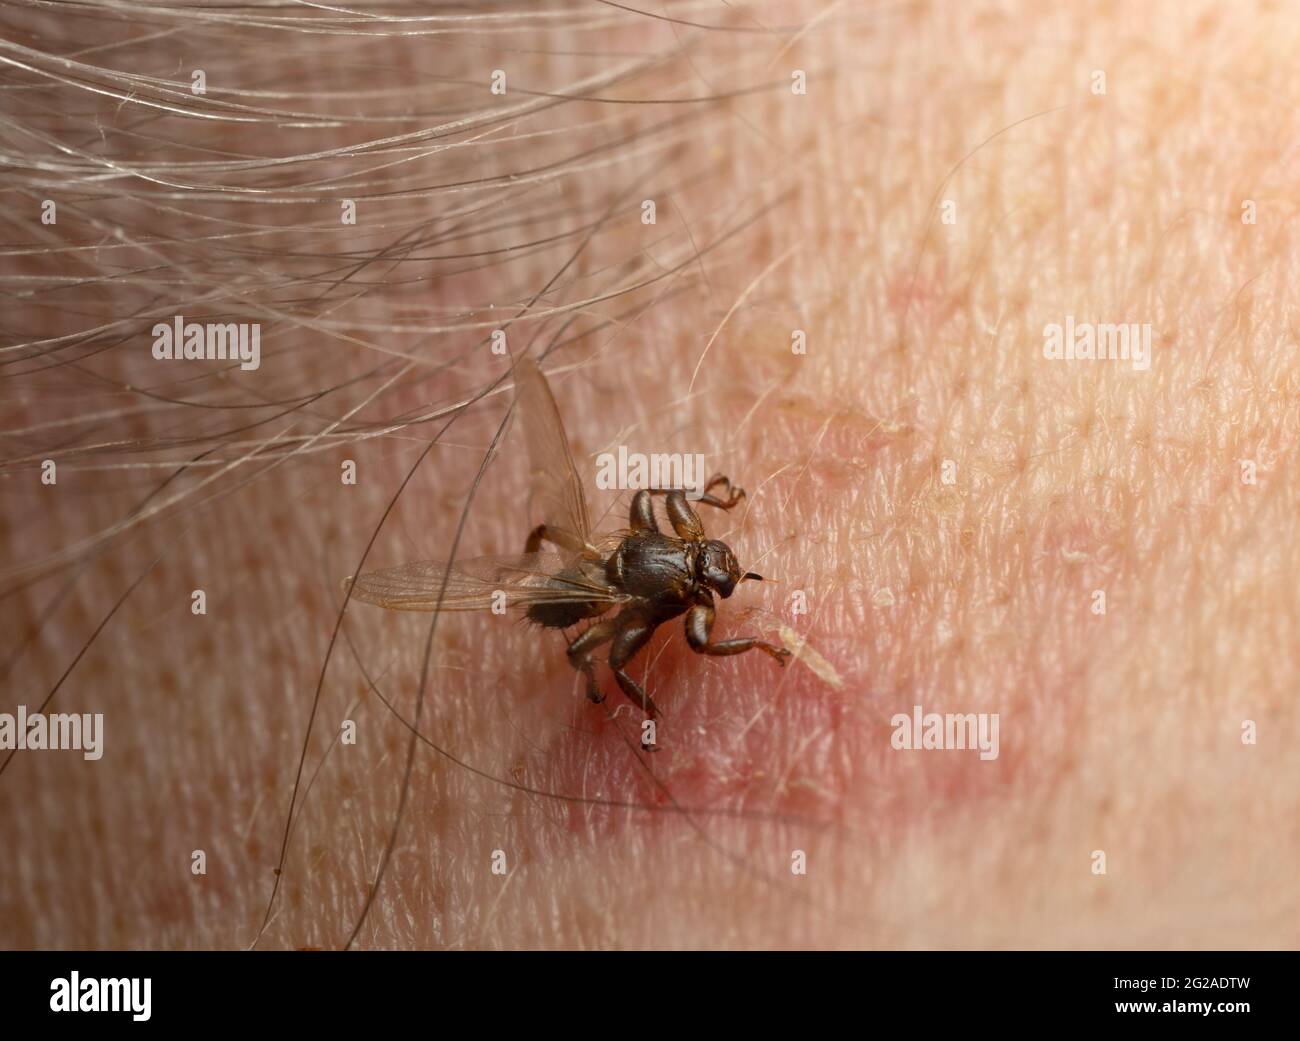 Cervi mosca, Lipoptena cervi che mordono sul collo umano, questo insetto è attivo durante l'autunno e può morso umano in rare occasioni Foto Stock